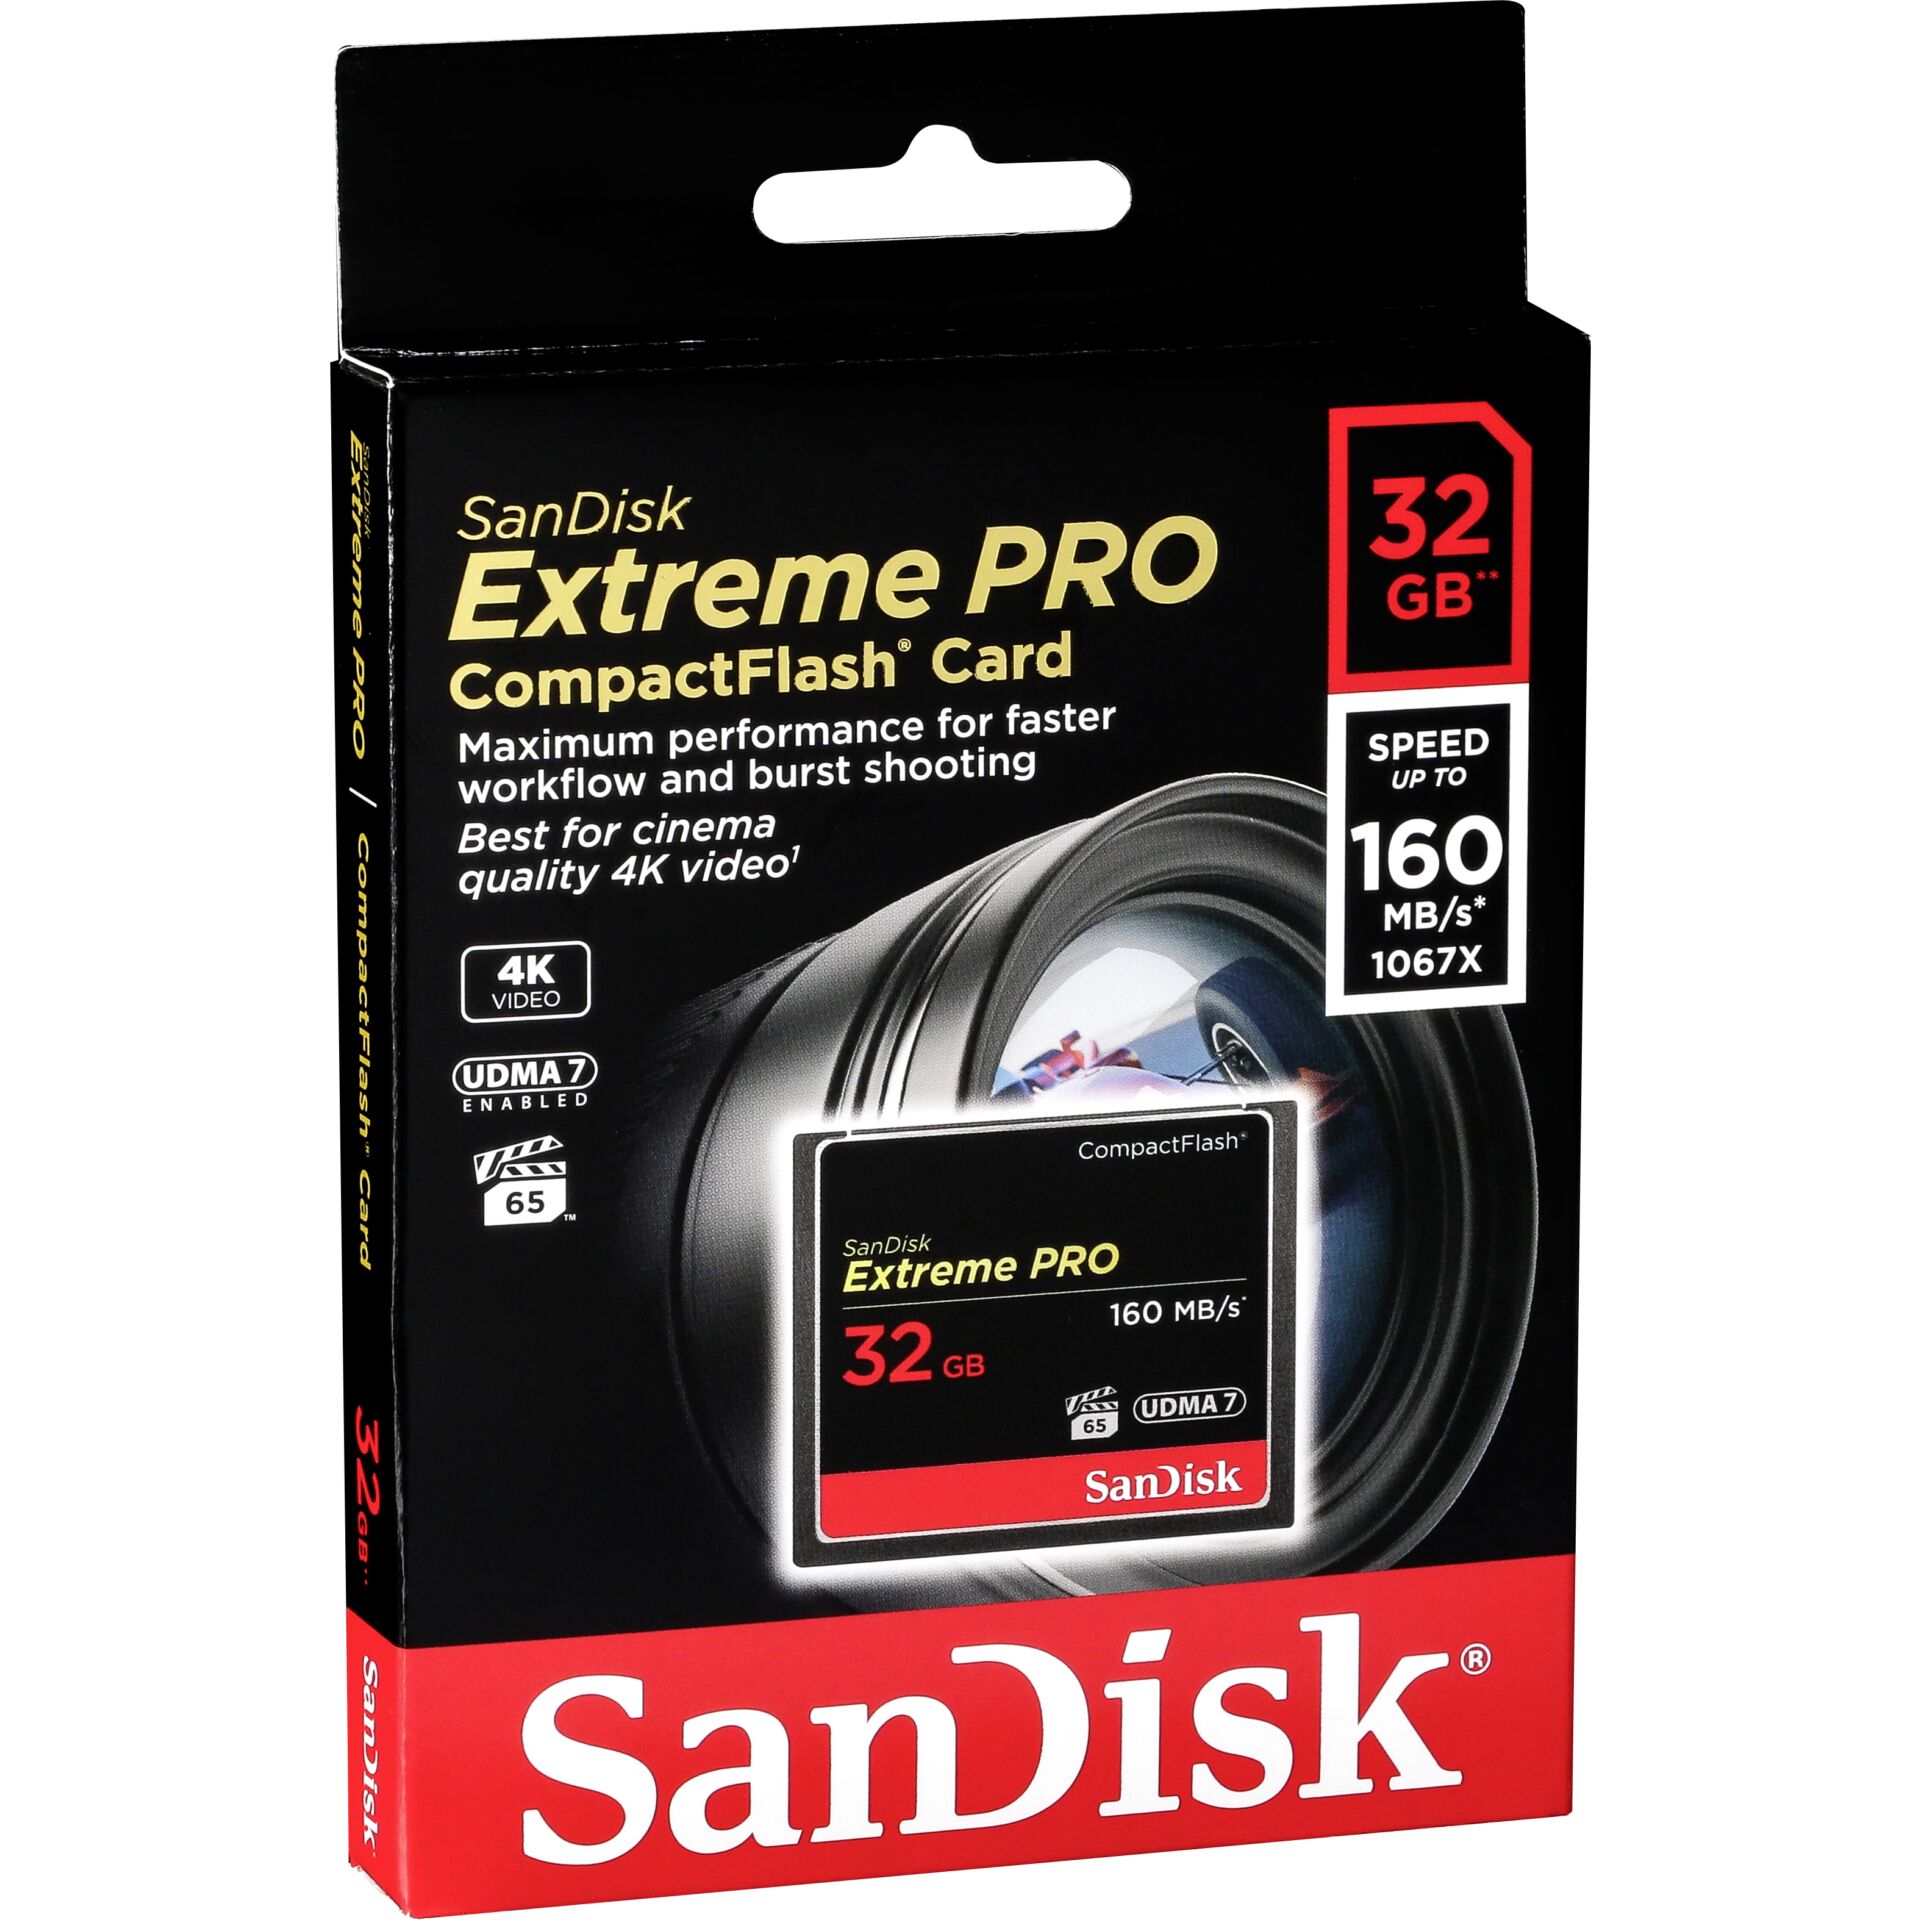 32 GB SanDisk CompactFlash Card [CF] Extreme PRO Speicherkar lesen: 160MB/s, schreiben: 150MB/s